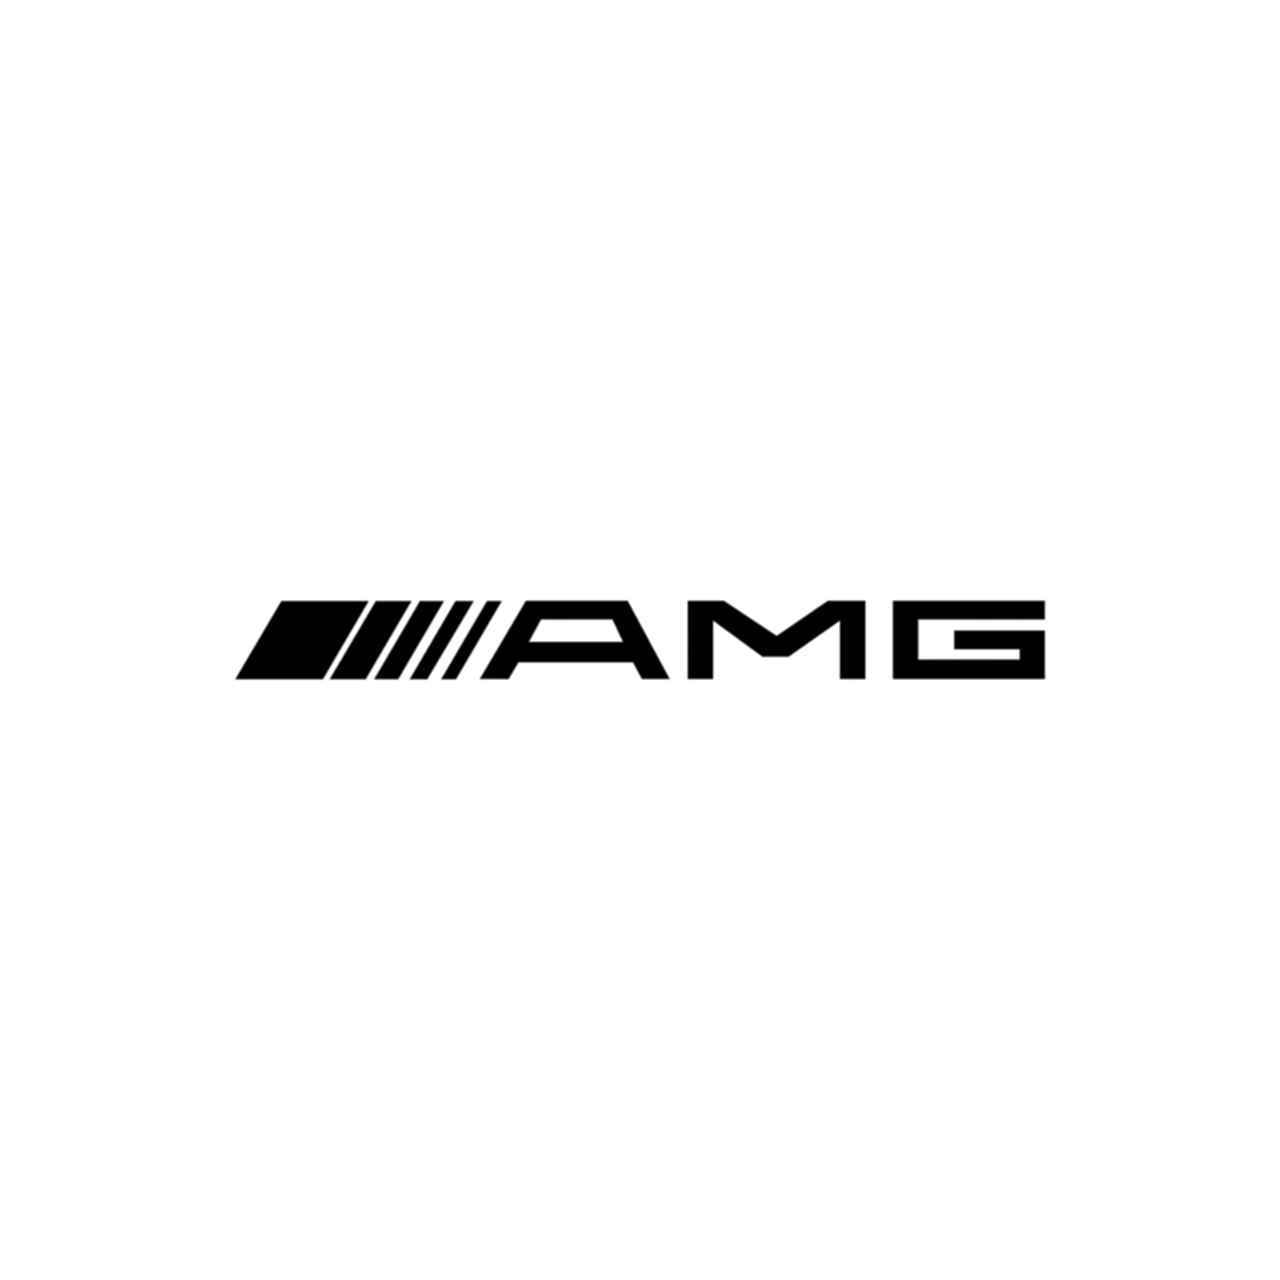 Vinyl Logo - Mercedes Amg Logo Vinyl Decal